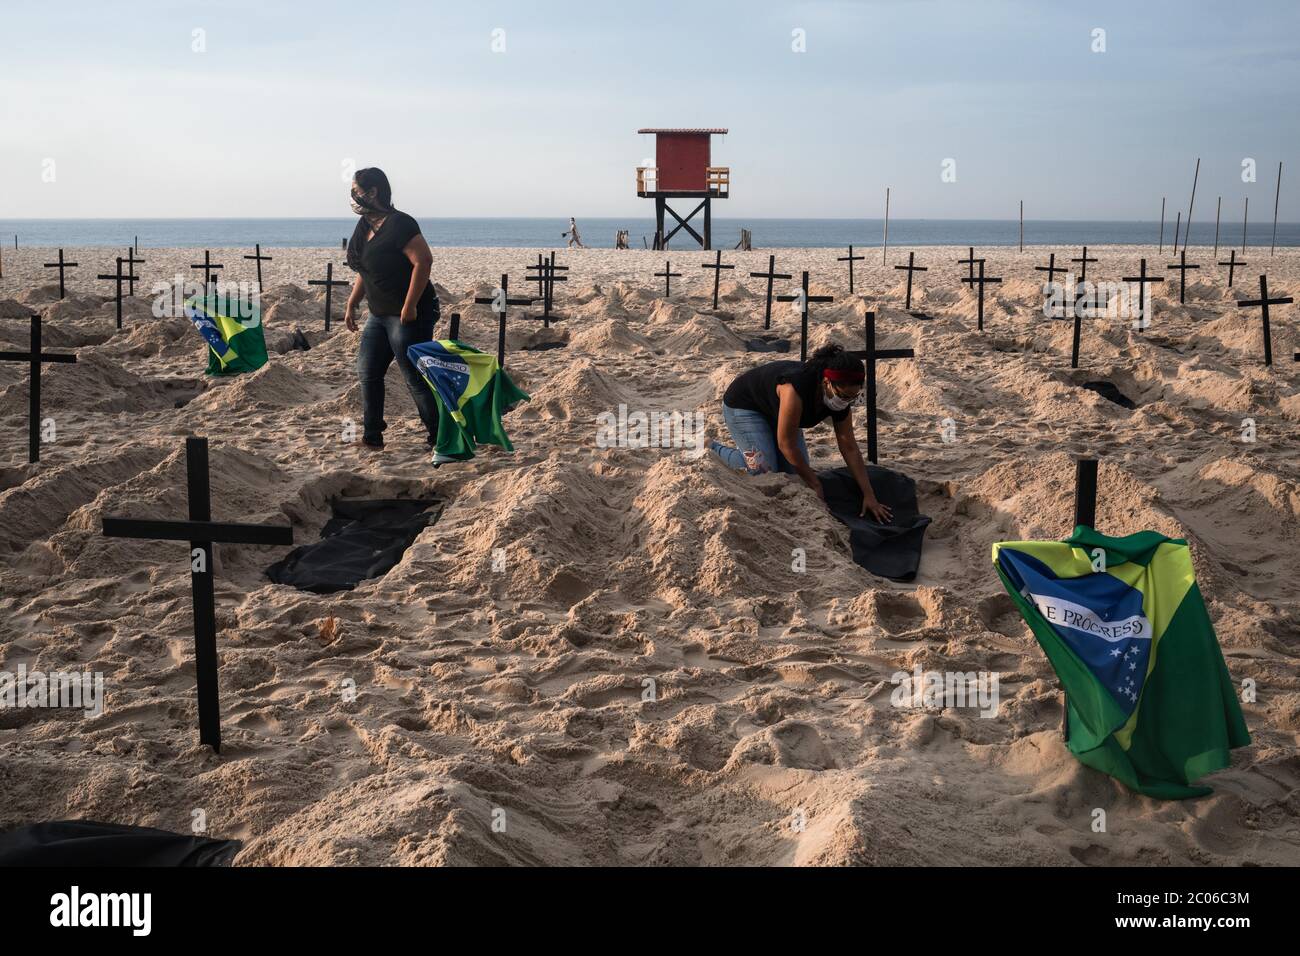 Rio De Janeiro, Brasilien. Juni 2020. Aktivisten der NGO Rio de Paz graben am Strand der Copacabana Gräber, um die Opfer von Corona zu symbolisieren und gegen den Umgang der Regierung mit der Krise zu protestieren. Brasilien ist das am stärksten von der Corona-Virus-Pandemie betroffene Land in Lateinamerika. Kredit: Ian Cheibub/dpa/Alamy Live News Stockfoto